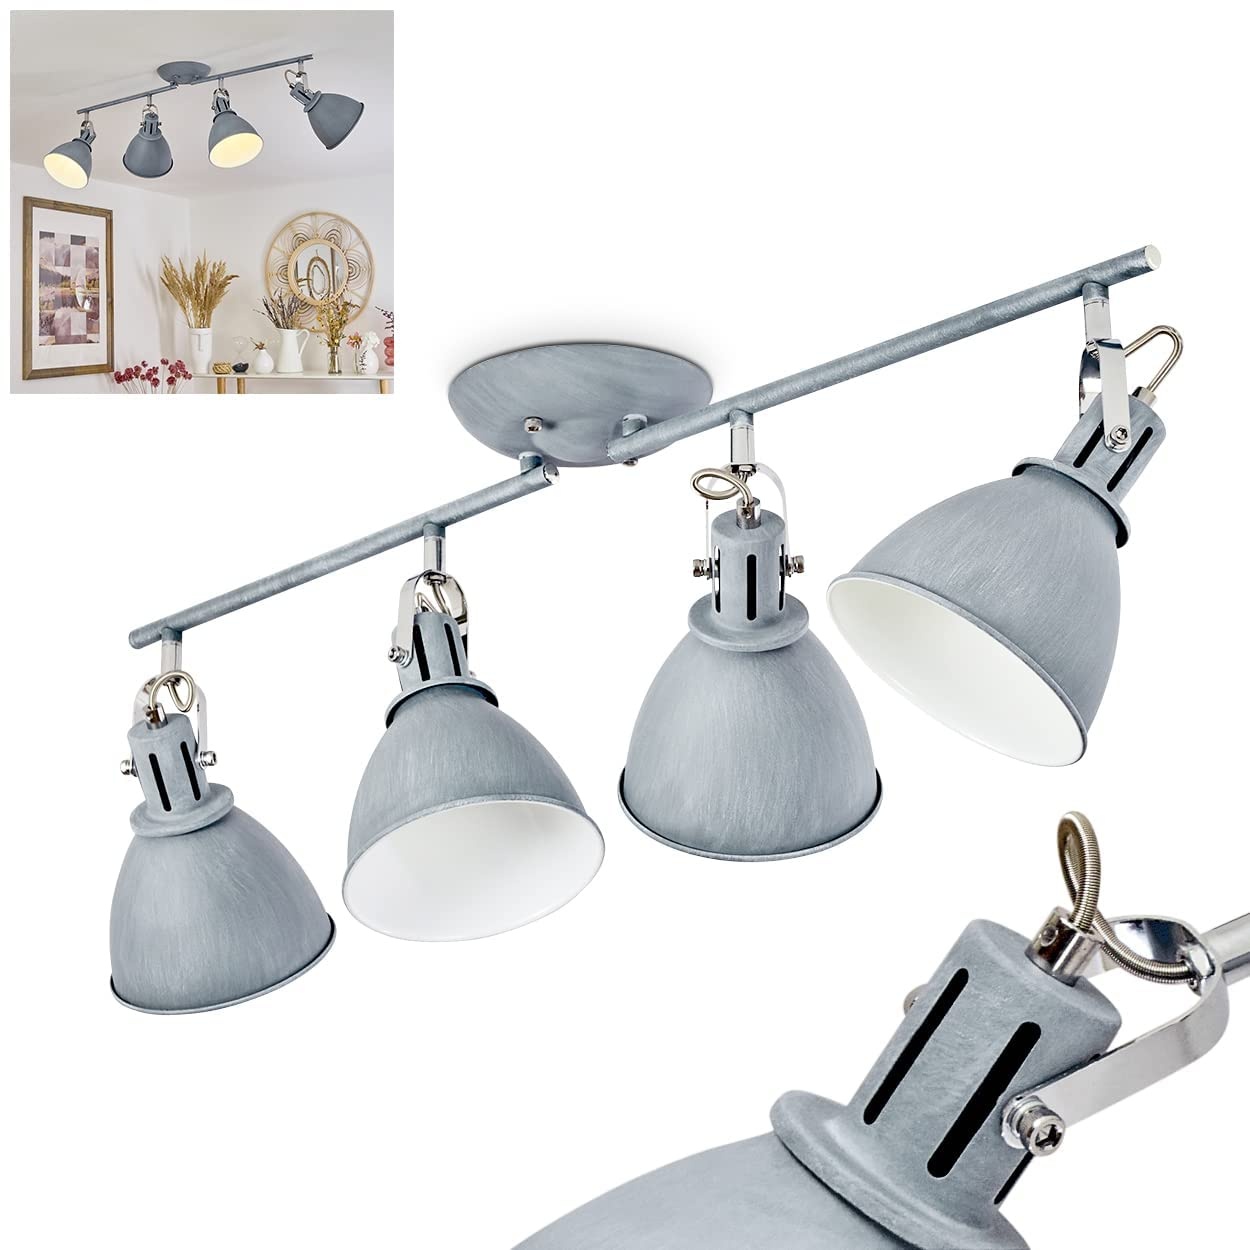 Deckenleuchte Koppom, Deckenlampe aus Metall in Grau-Blau/Weiß, 4-flammig, mit verstellbaren Lampenschirmen und Lampenarmen, 4 x E14-Fassung, Retro-Design, ohne Leuchtmittel